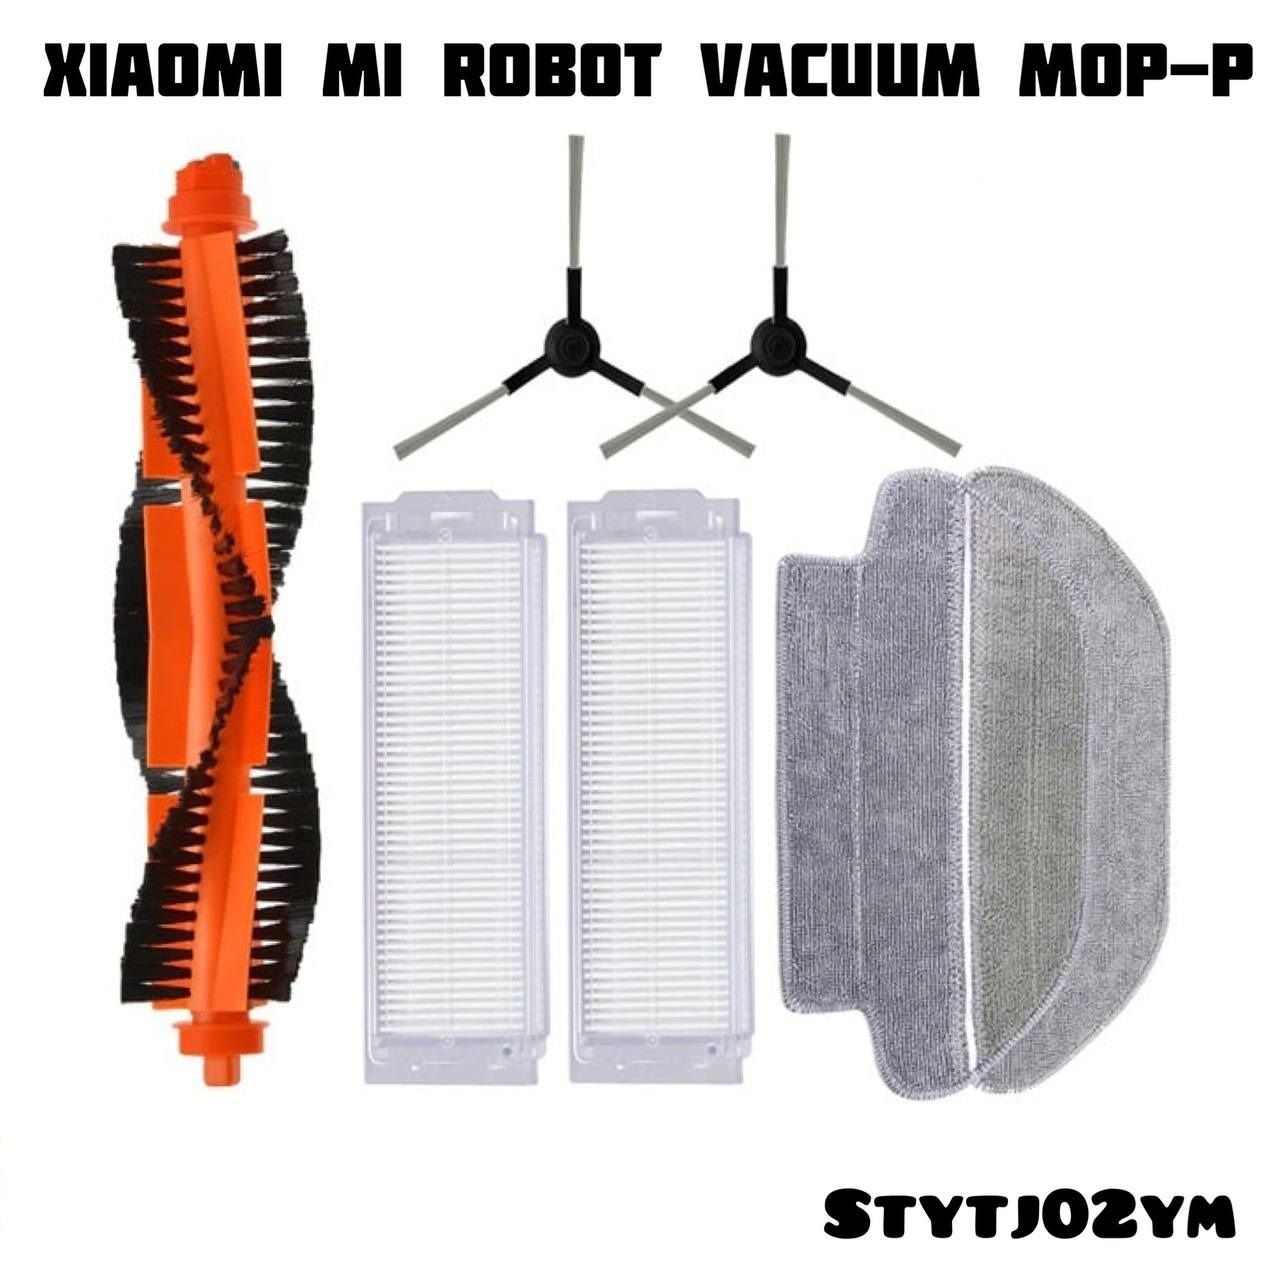 Vacuum mop lds 2. Робот пылесос Xiaomi Vacuum Mop плата.